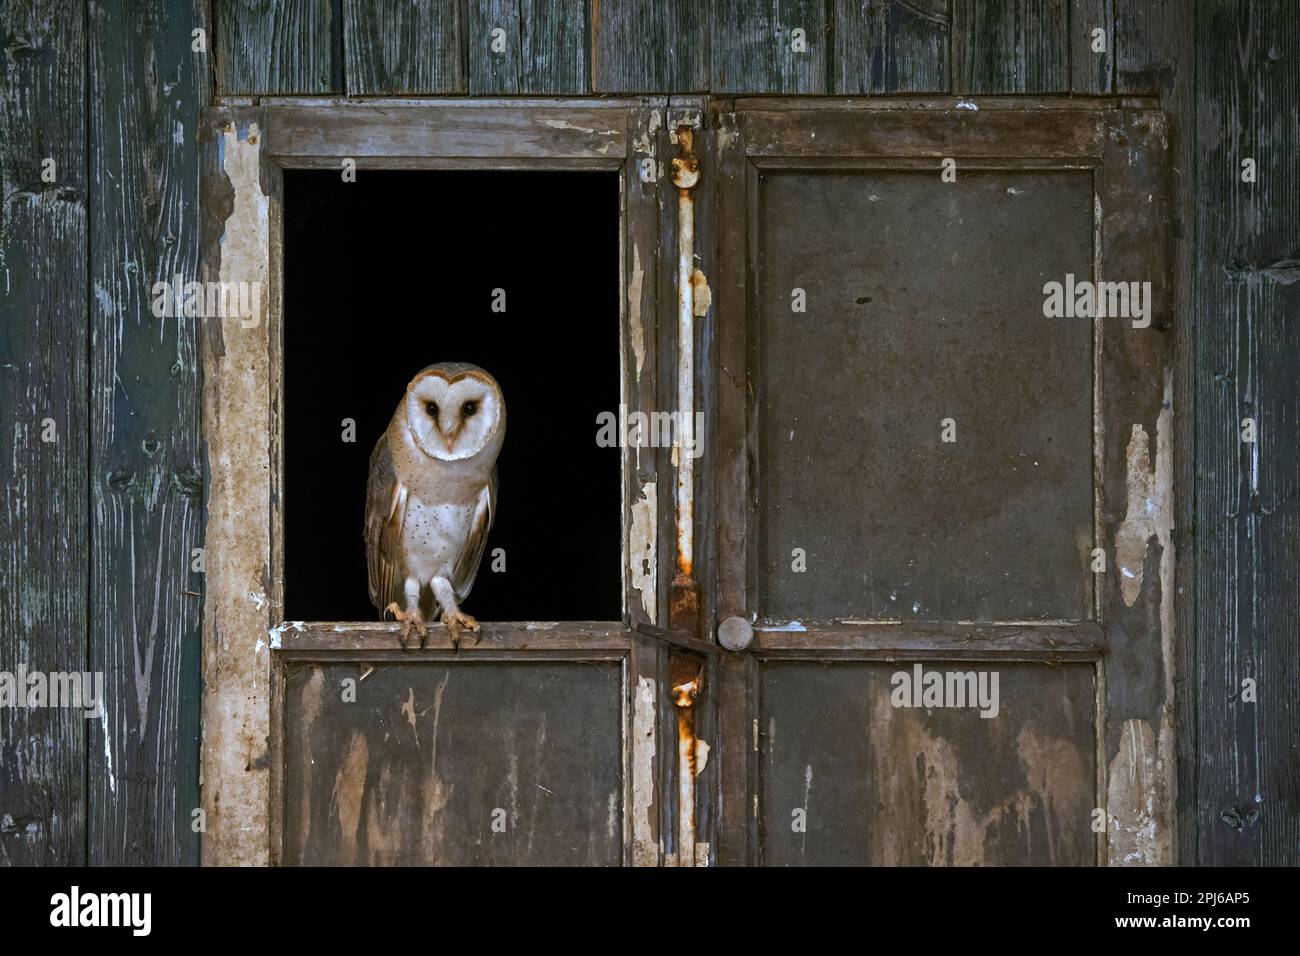 Gewöhnliche Scheuneneule (Tyto alba), die im Frühling in einem offenen Fenster in einer Holzschuppen-Tür auf einer verfallenen Farm steht Stockfoto